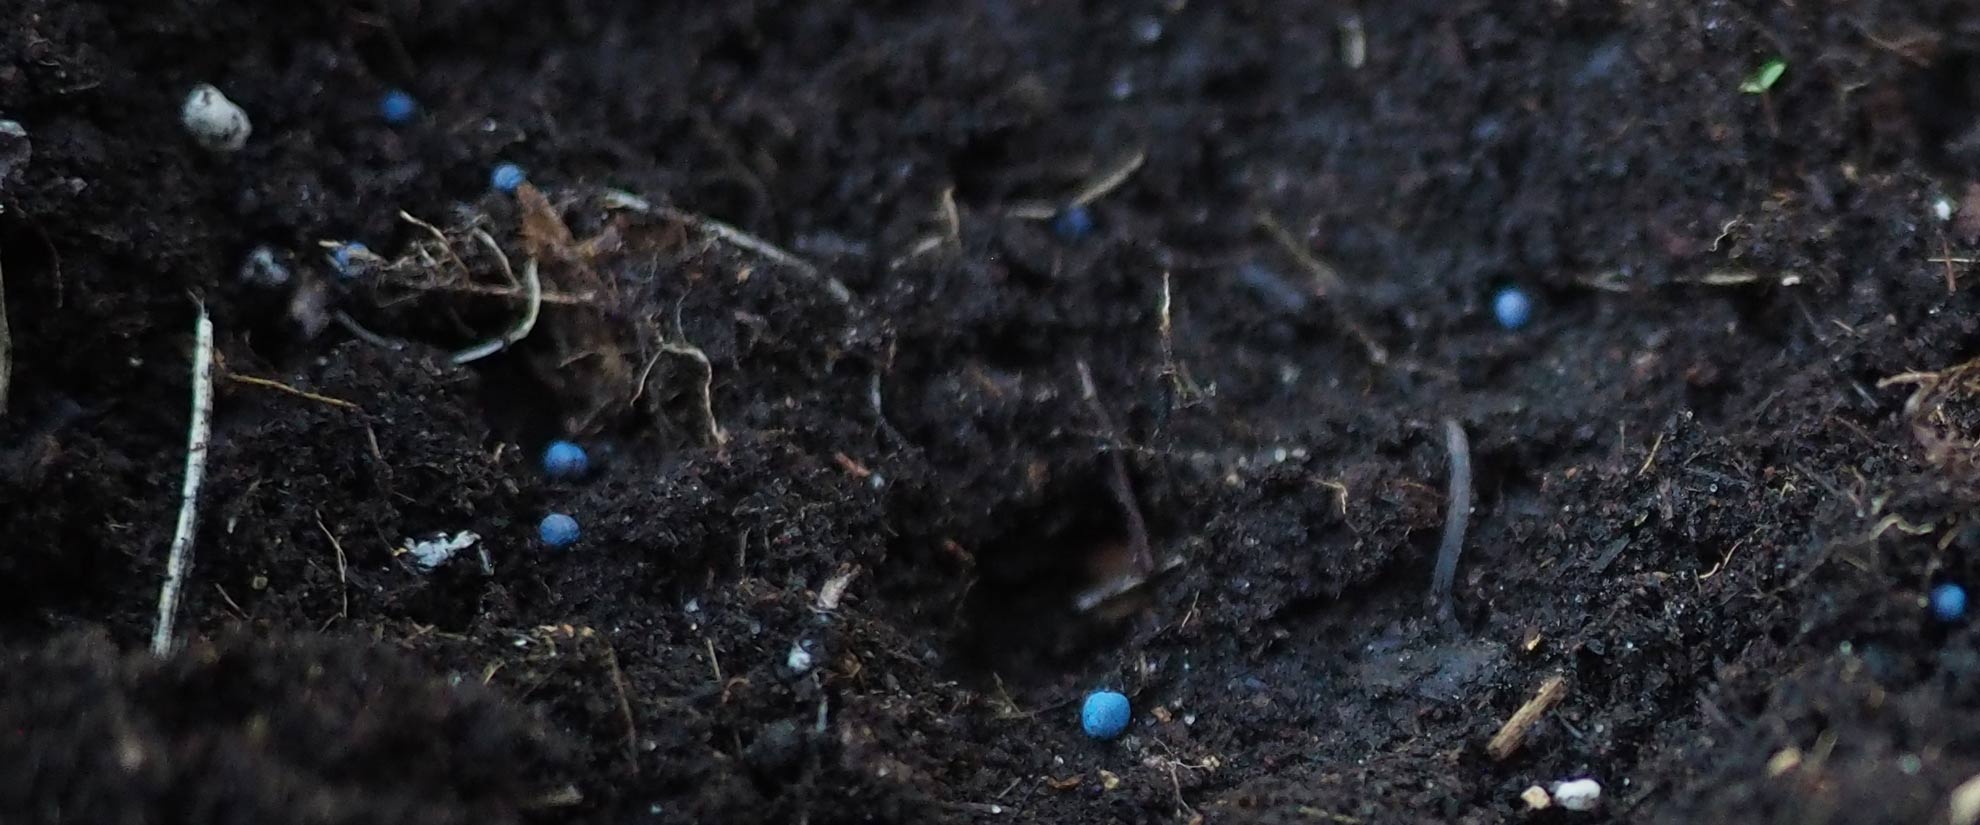 canola seeds coated with blue pesticides scattered against dark tilled soil